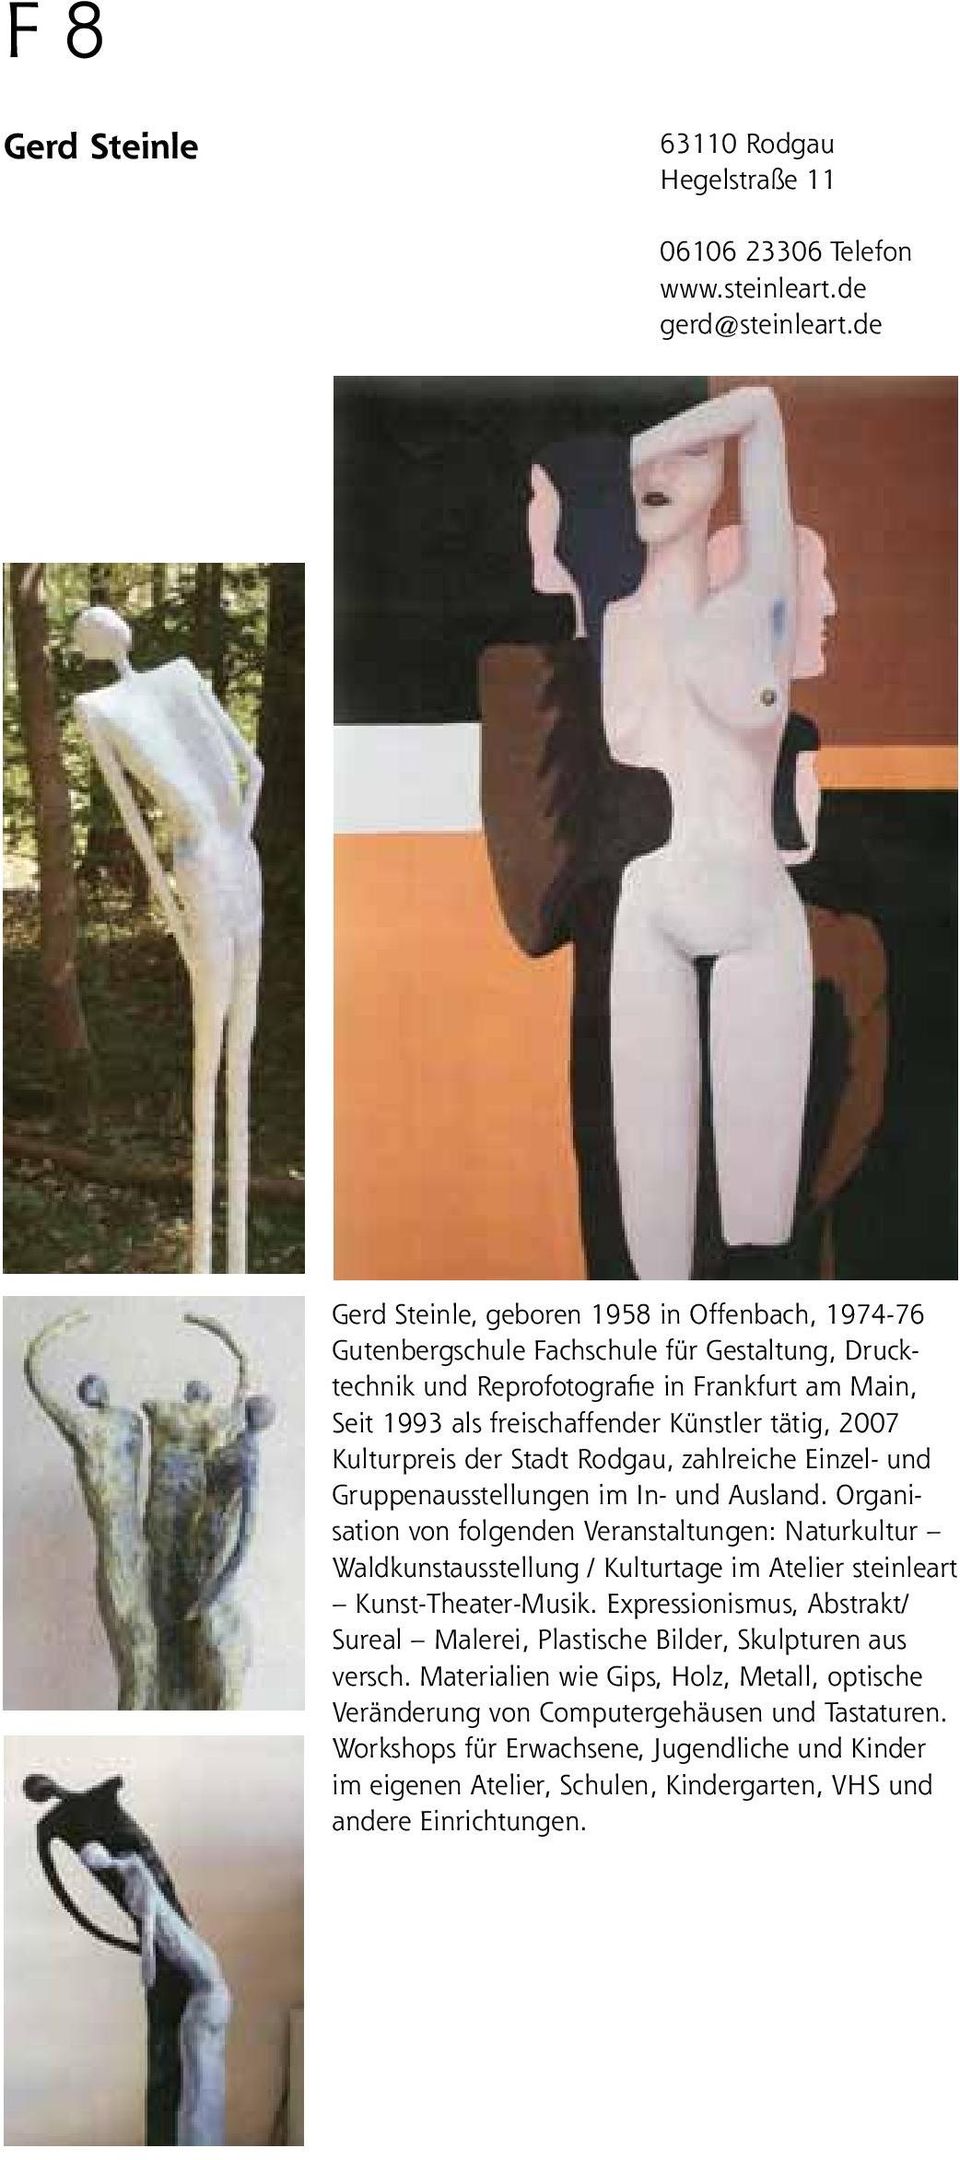 2007 Kulturpreis der Stadt Rodgau, zahlreiche Einzel- und Gruppenausstellungen im In- und Ausland.